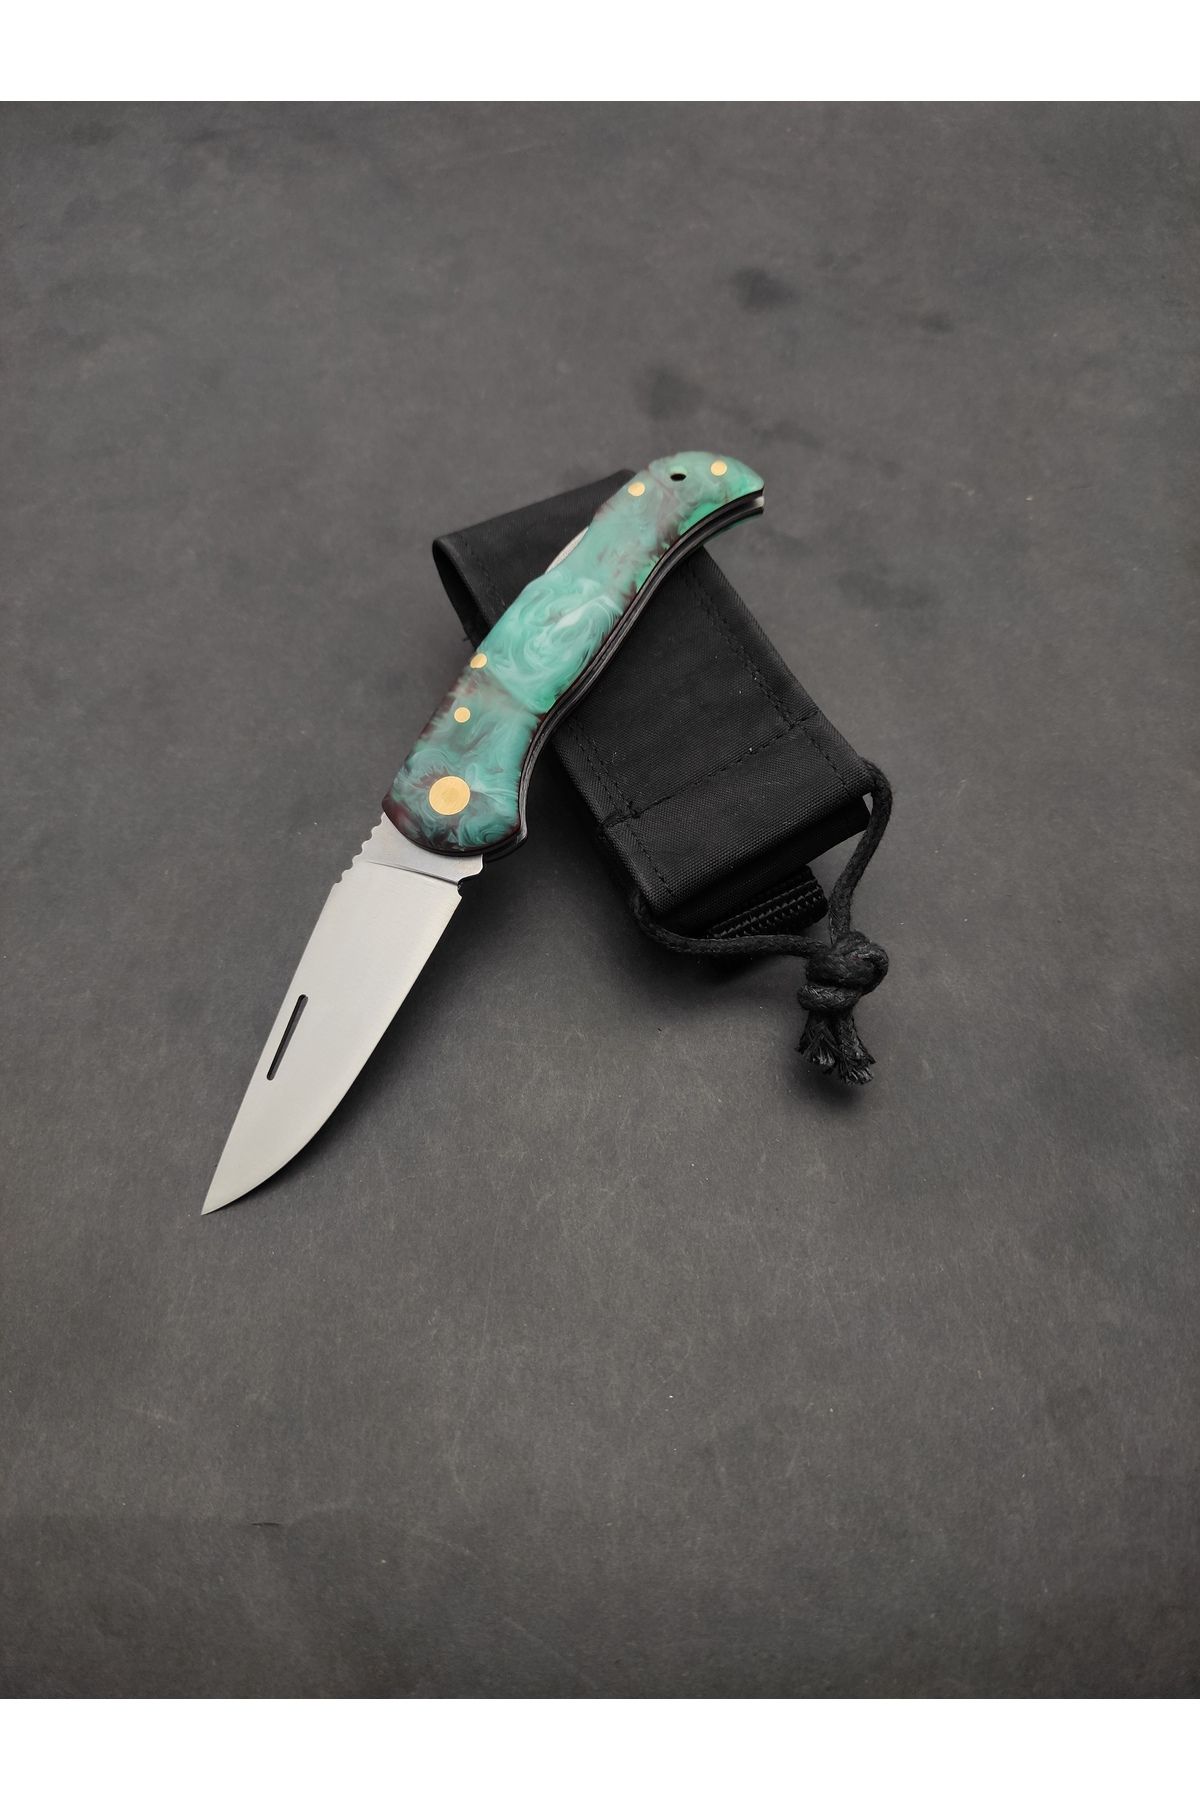 ALPHAS Sırttan Kilitli Çakı Kamp Outdoor Bıçağı El Yapımı Paslanmaz Çelik Kılıflı